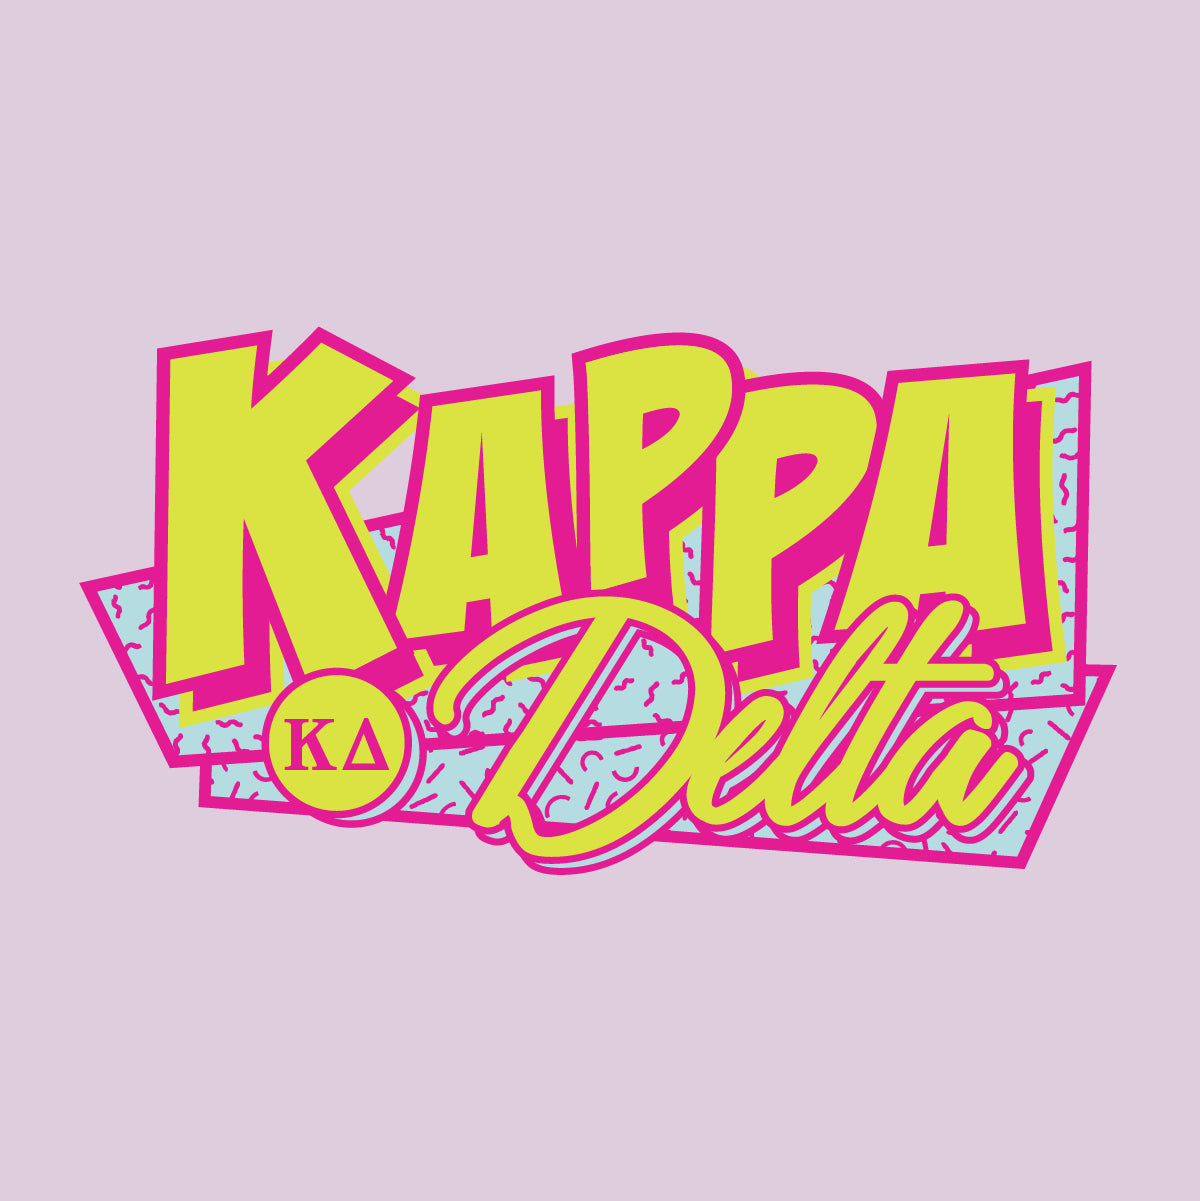 It's Kappa Delta